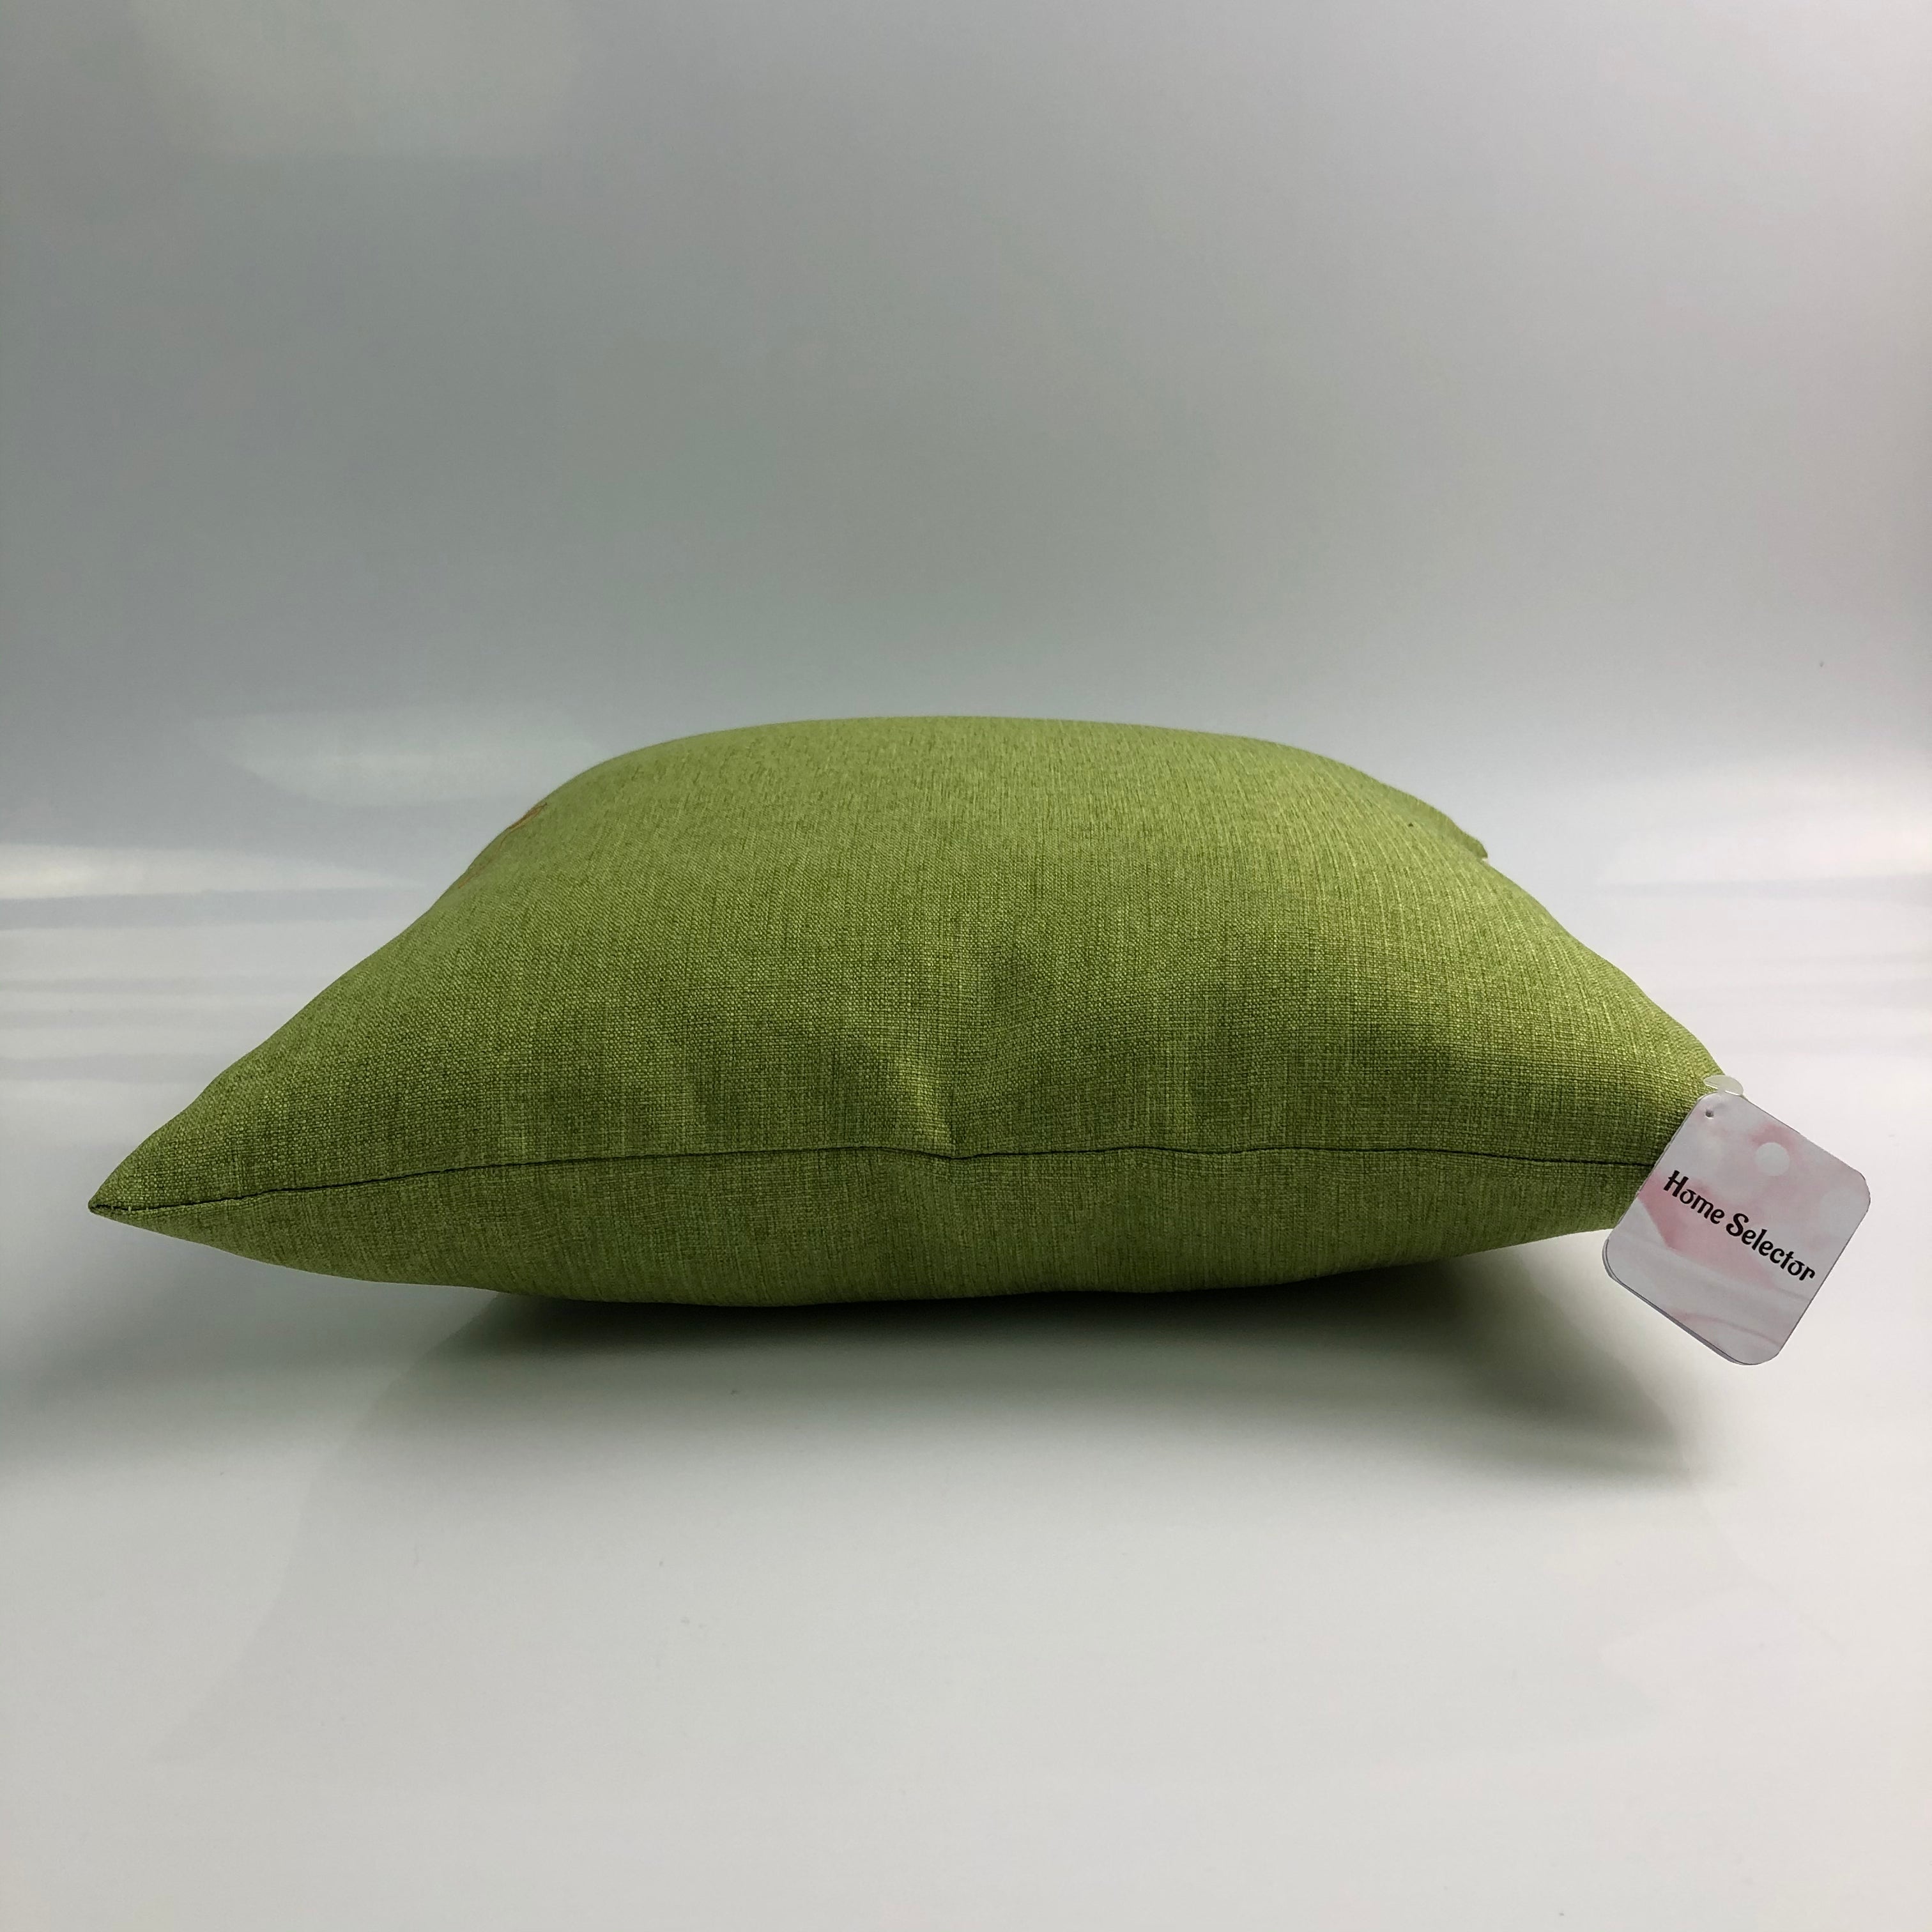 Home Selector Modern Sofa Throw Pillow - Glow Guards